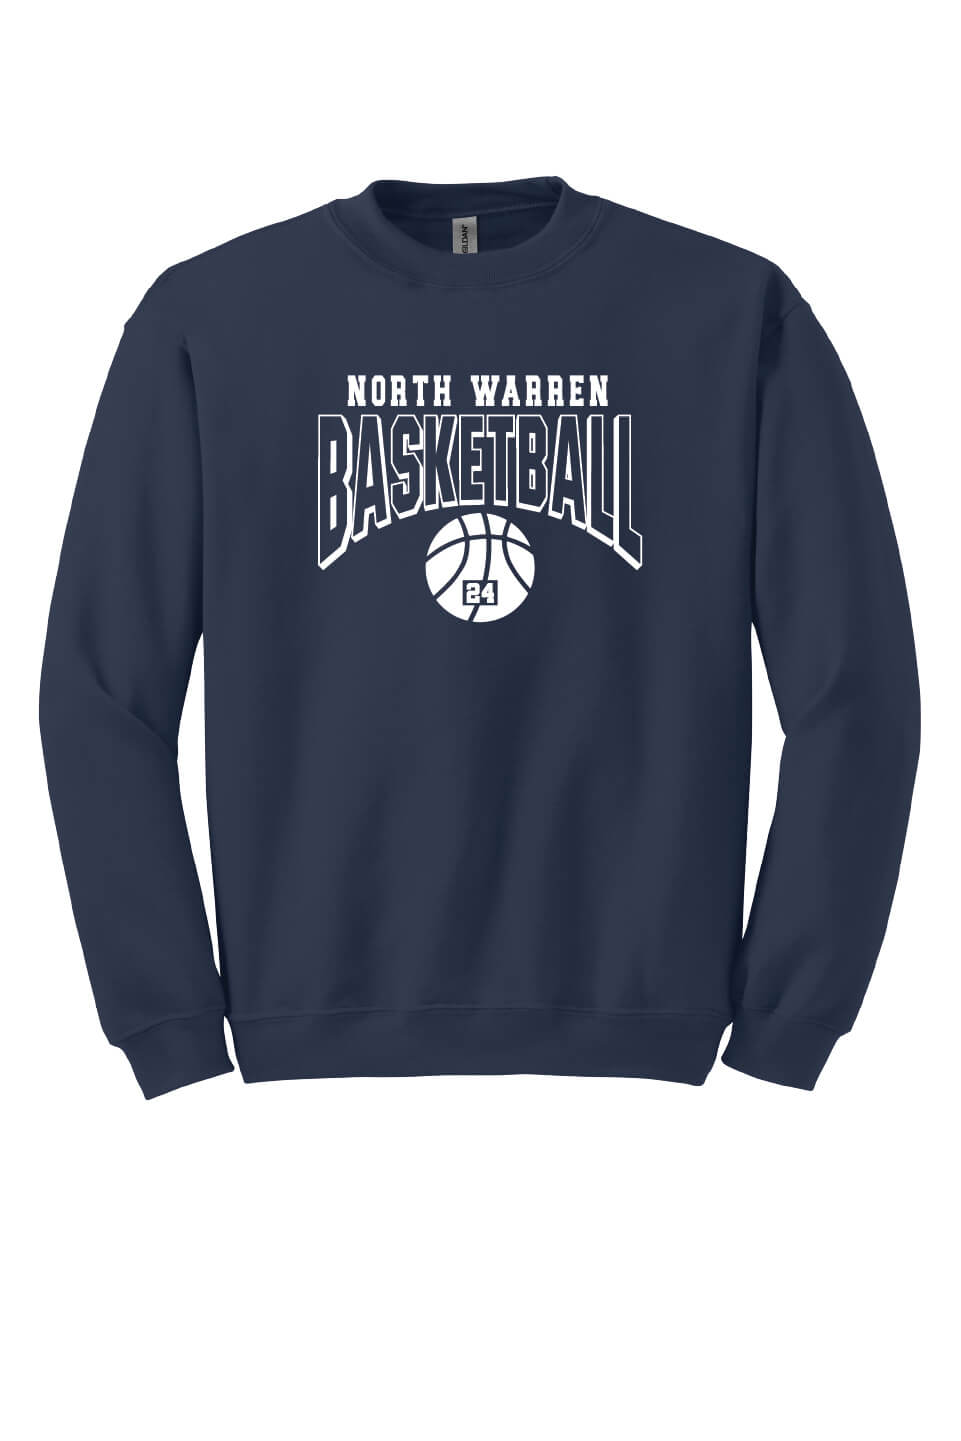 Basketball Crewneck Sweatshirt navy